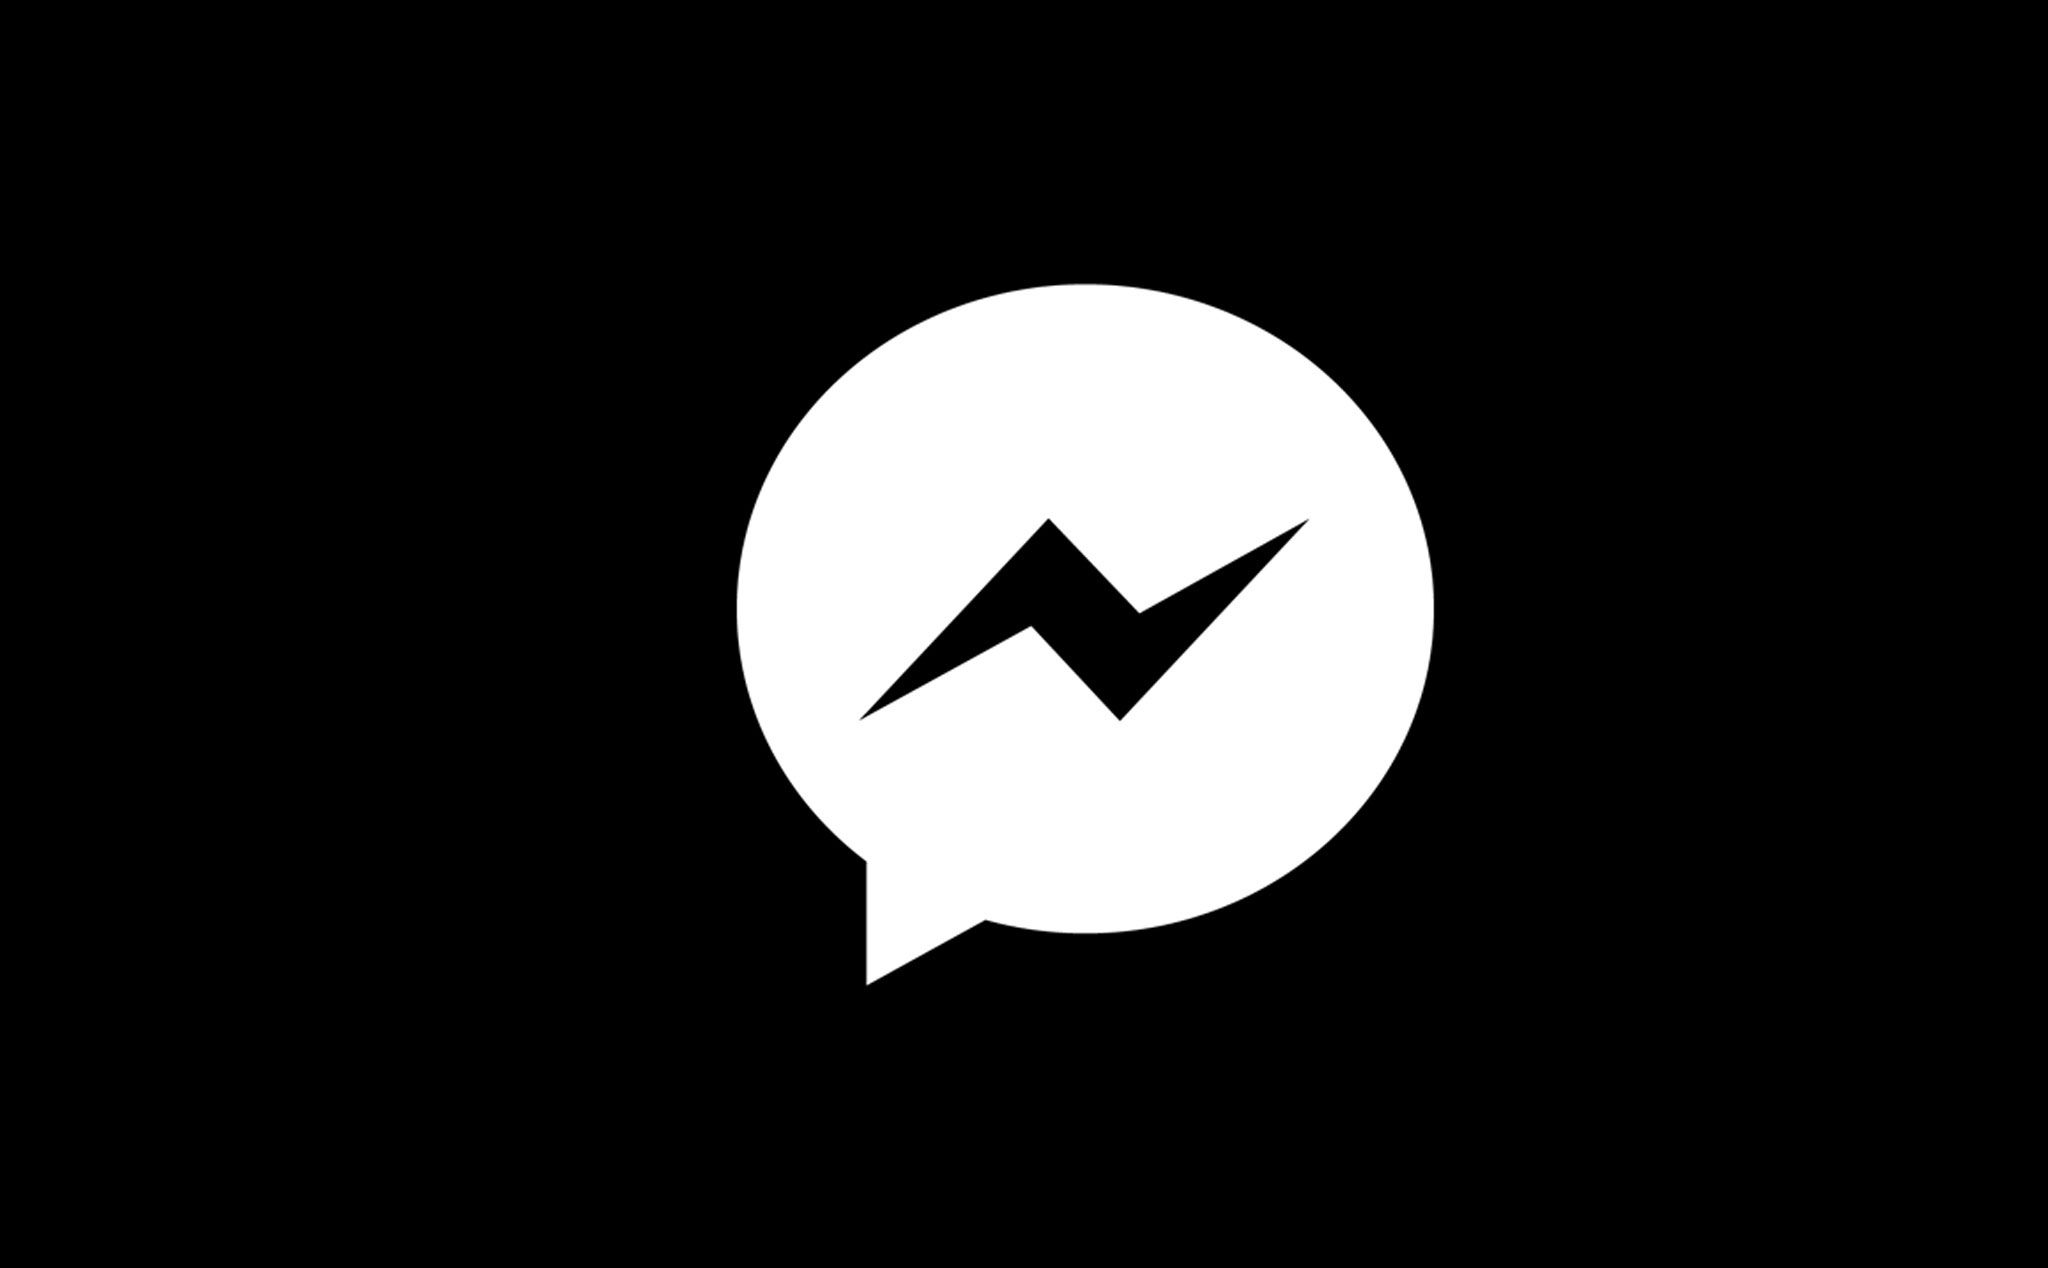 Trò chuyện trên Messenger cũng có thể màu sắc đó nha! Làm mới trò chuyện của bạn với những hình ảnh chat đen trắng để tạo cảm giác giản dị, tinh tế đến người nhận. Hãy tìm hiểu cách gửi ảnh trắng đen trên Messenger ngay thôi.